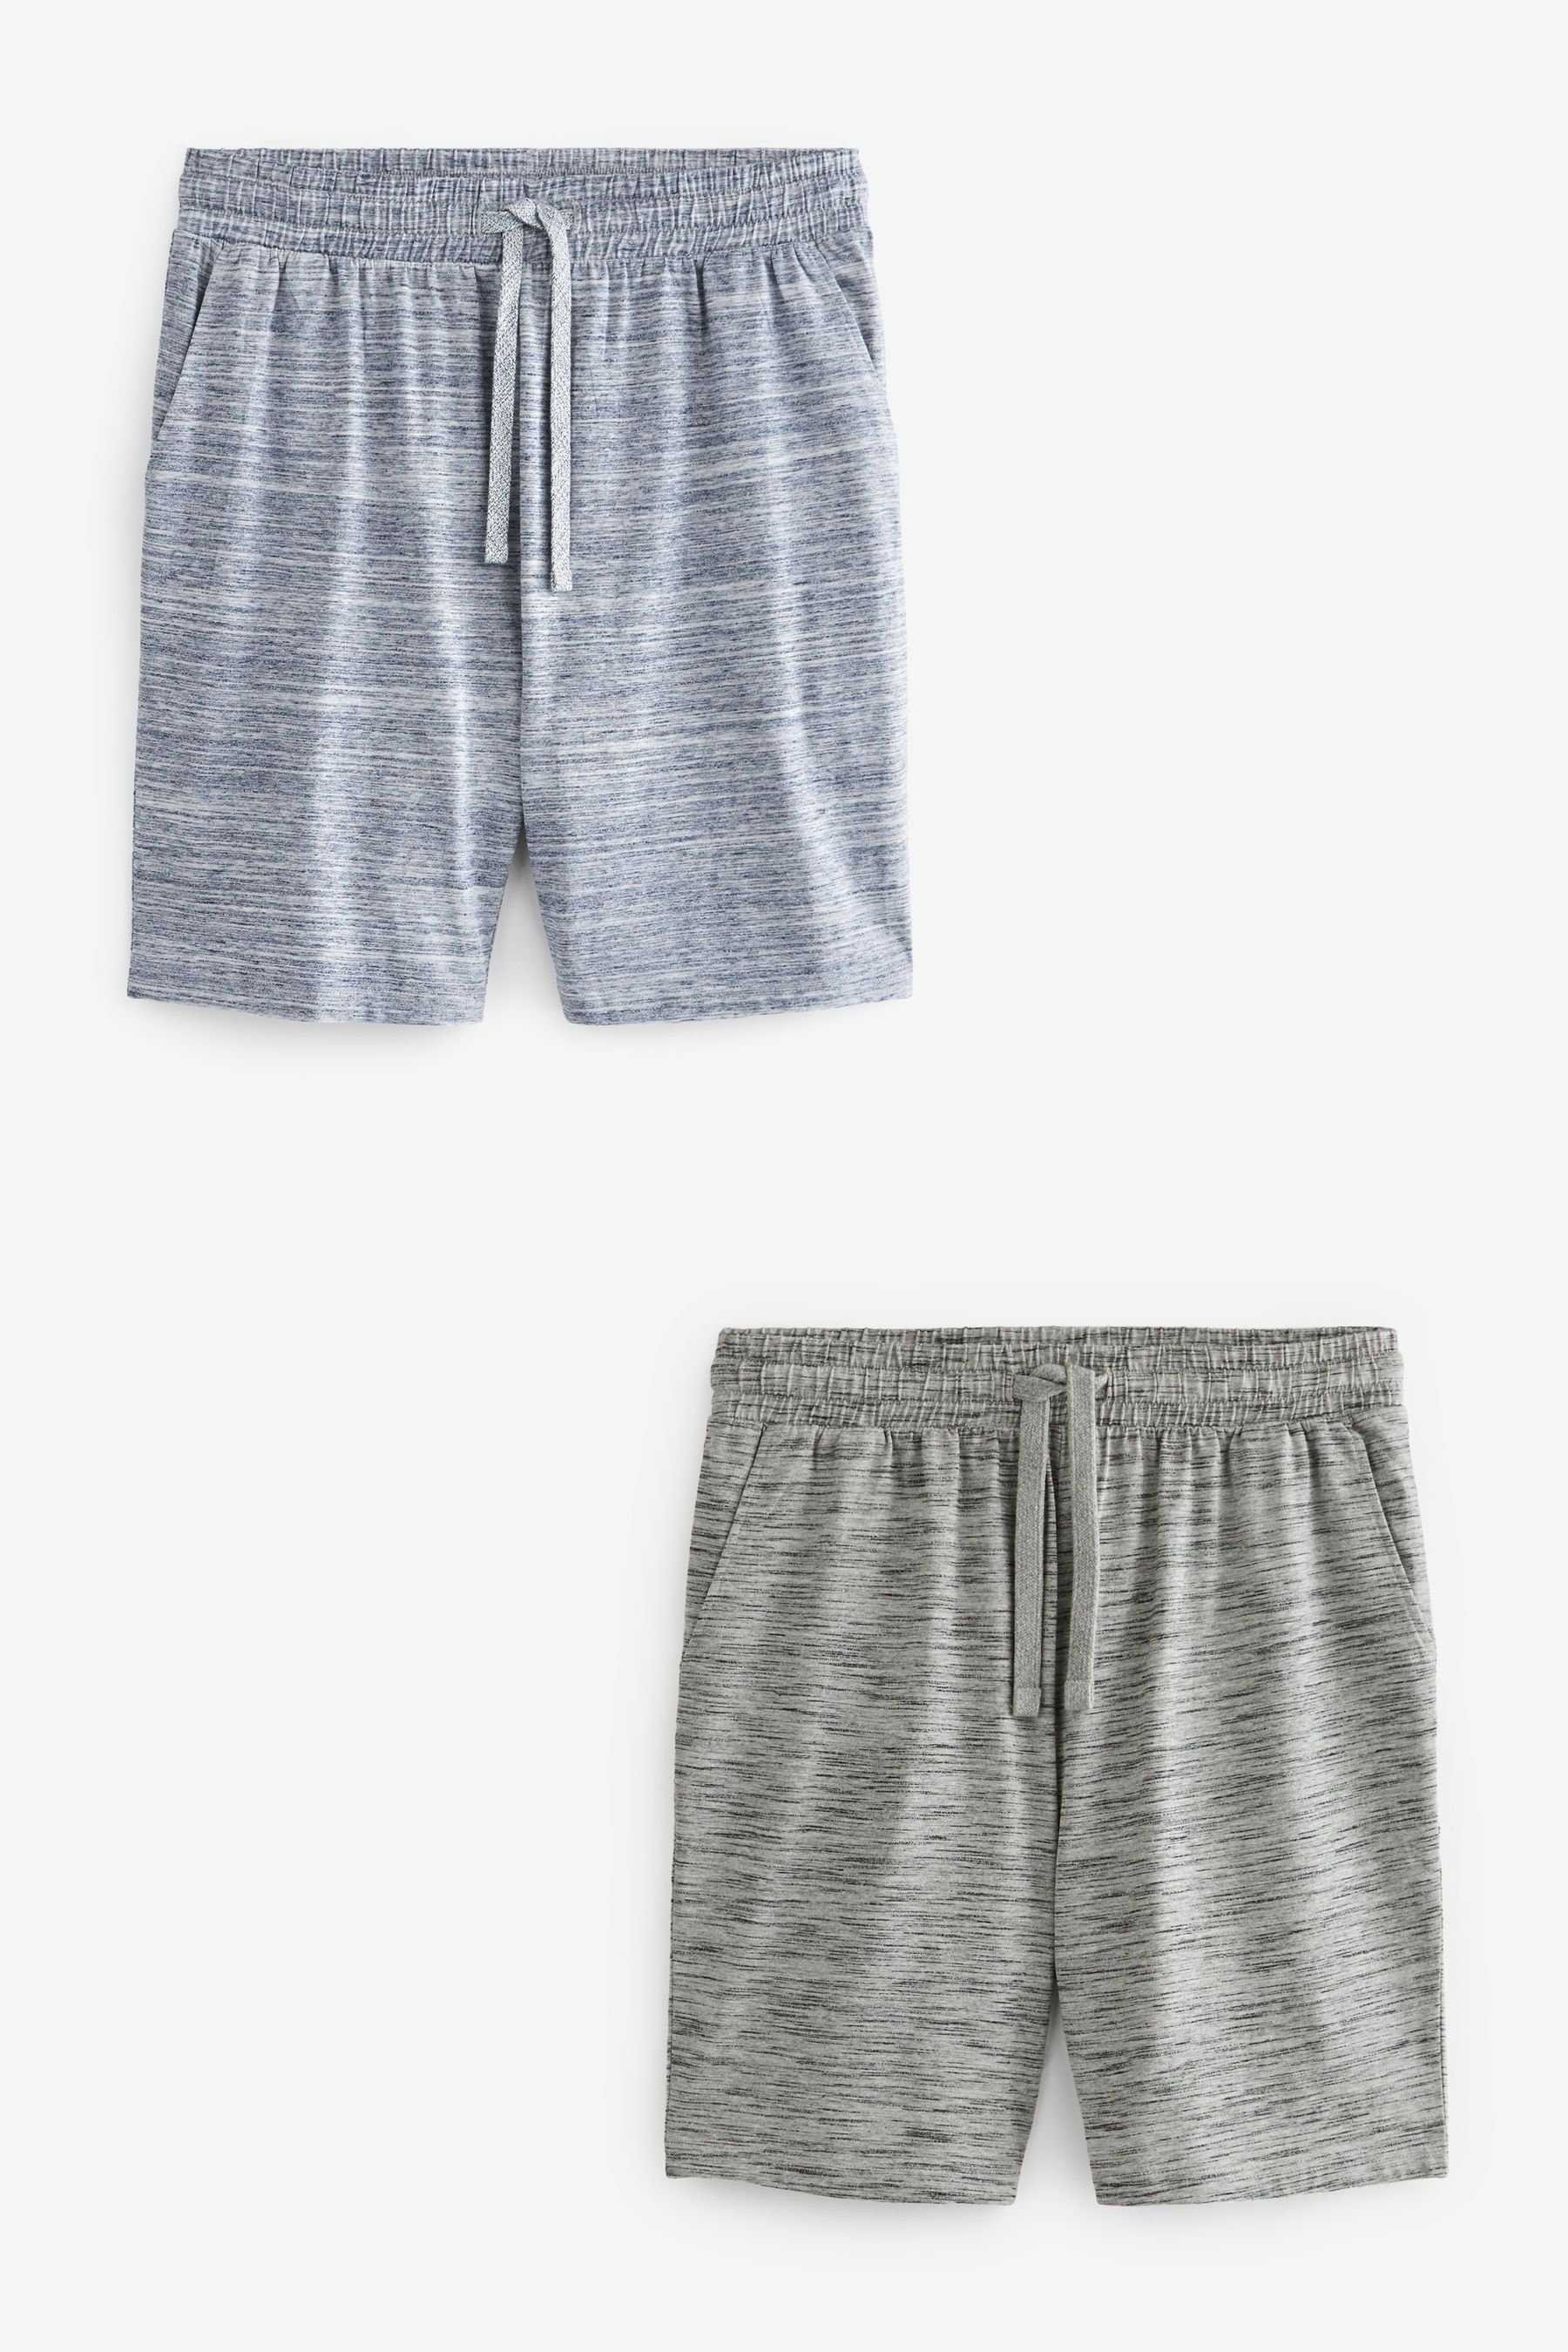 Next Schlafshorts Leichte Shorts, 2er-Pack (2-tlg) Grey/Navy Blue